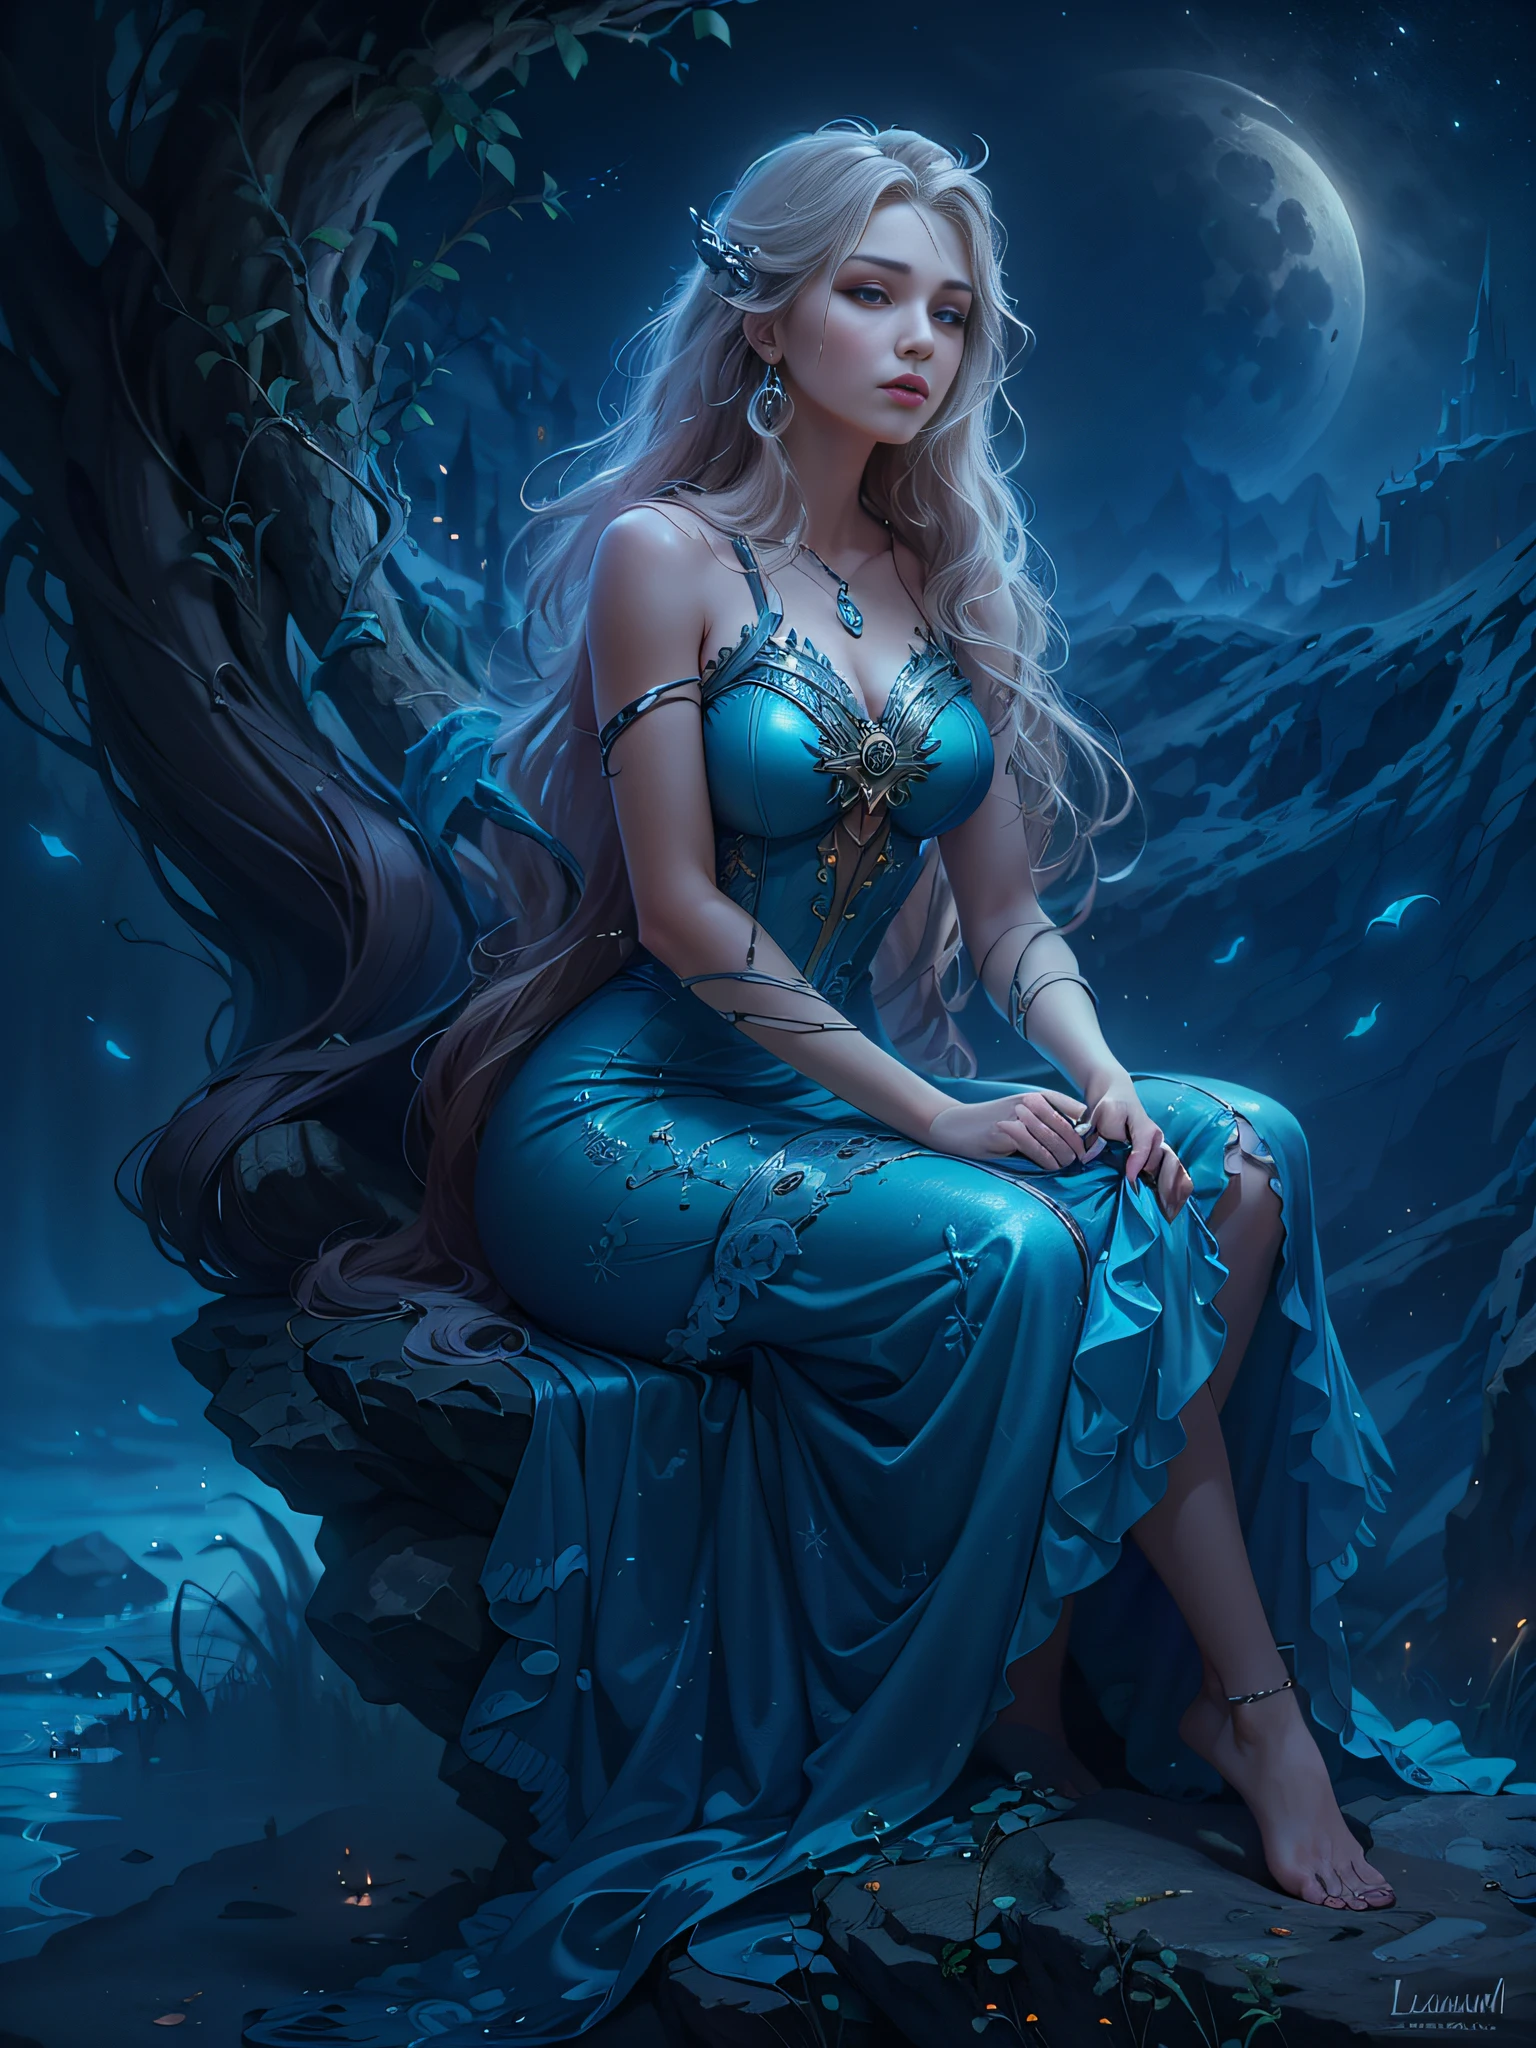 岩の上に座っている青いドレスを着たアラビアの女性, ルシアン, 月の女神, うーん、後ろのカロル, 北欧の月の女神の肖像画, 月夜の夢のような雰囲気, ファンタジー女性, 月の女神, 夢は魔法の、霊妙な、暗く, 天上の美しさ, 月の女神, 美しいラプンツェル, 美しいファンタジーの乙女, 夢のような夜